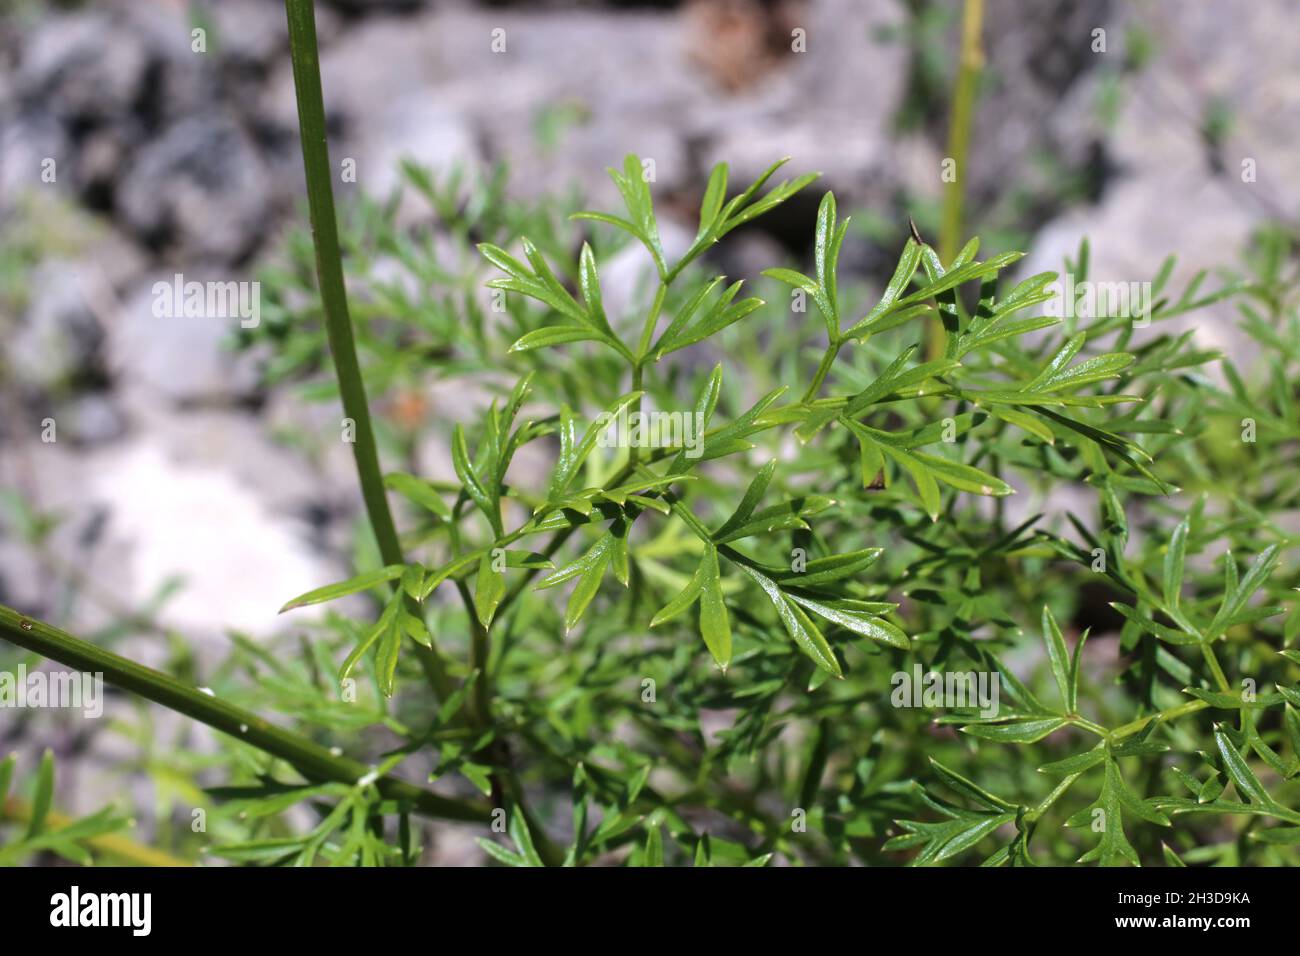 Selinum silaifolium, Cnidium silaifolium, Apiaceae. Wild plant shot in spring. Stock Photo